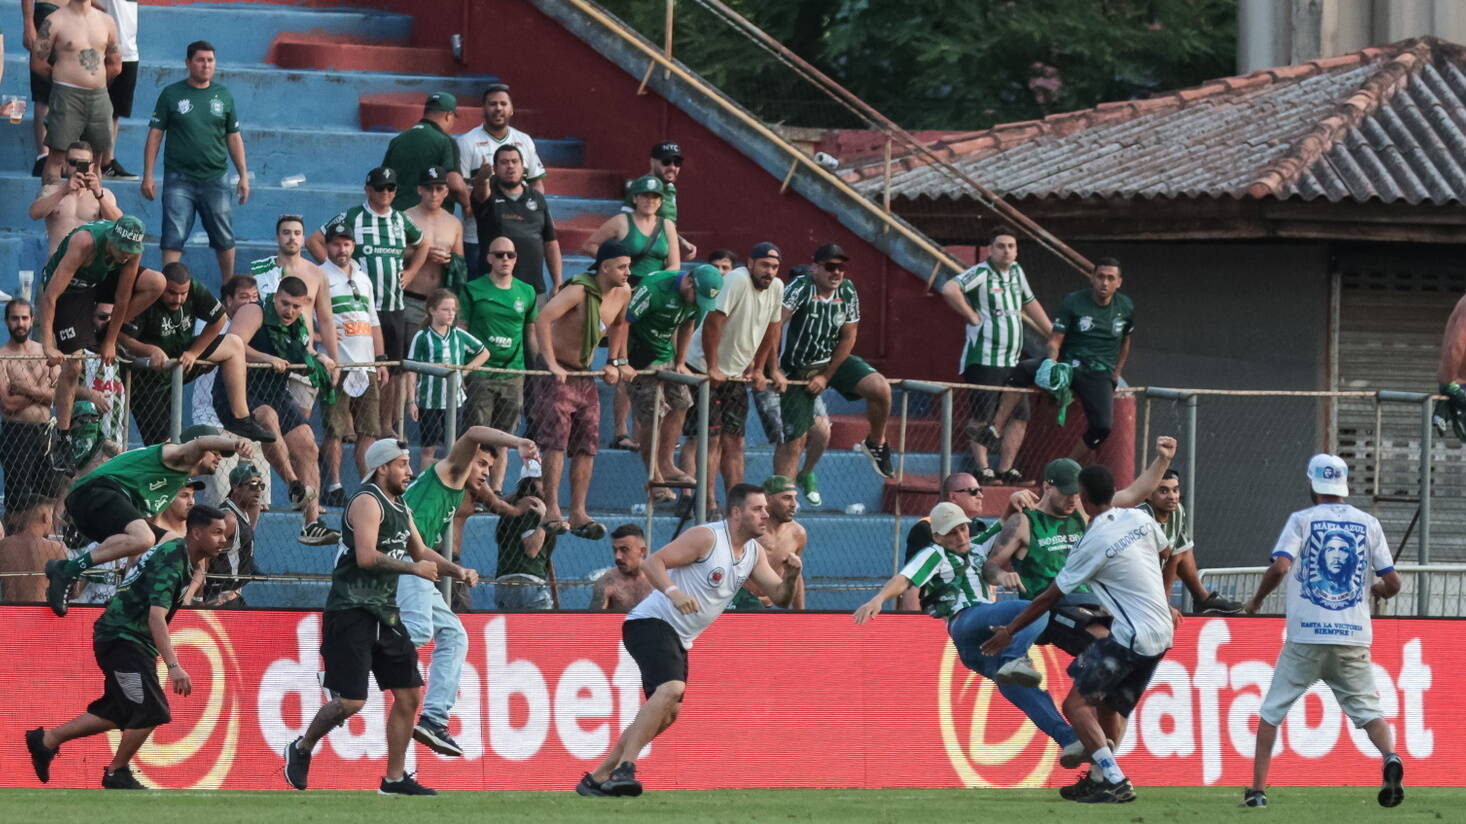 Guarani vs Tombense: A Clash of Titans in the Brazilian Football League